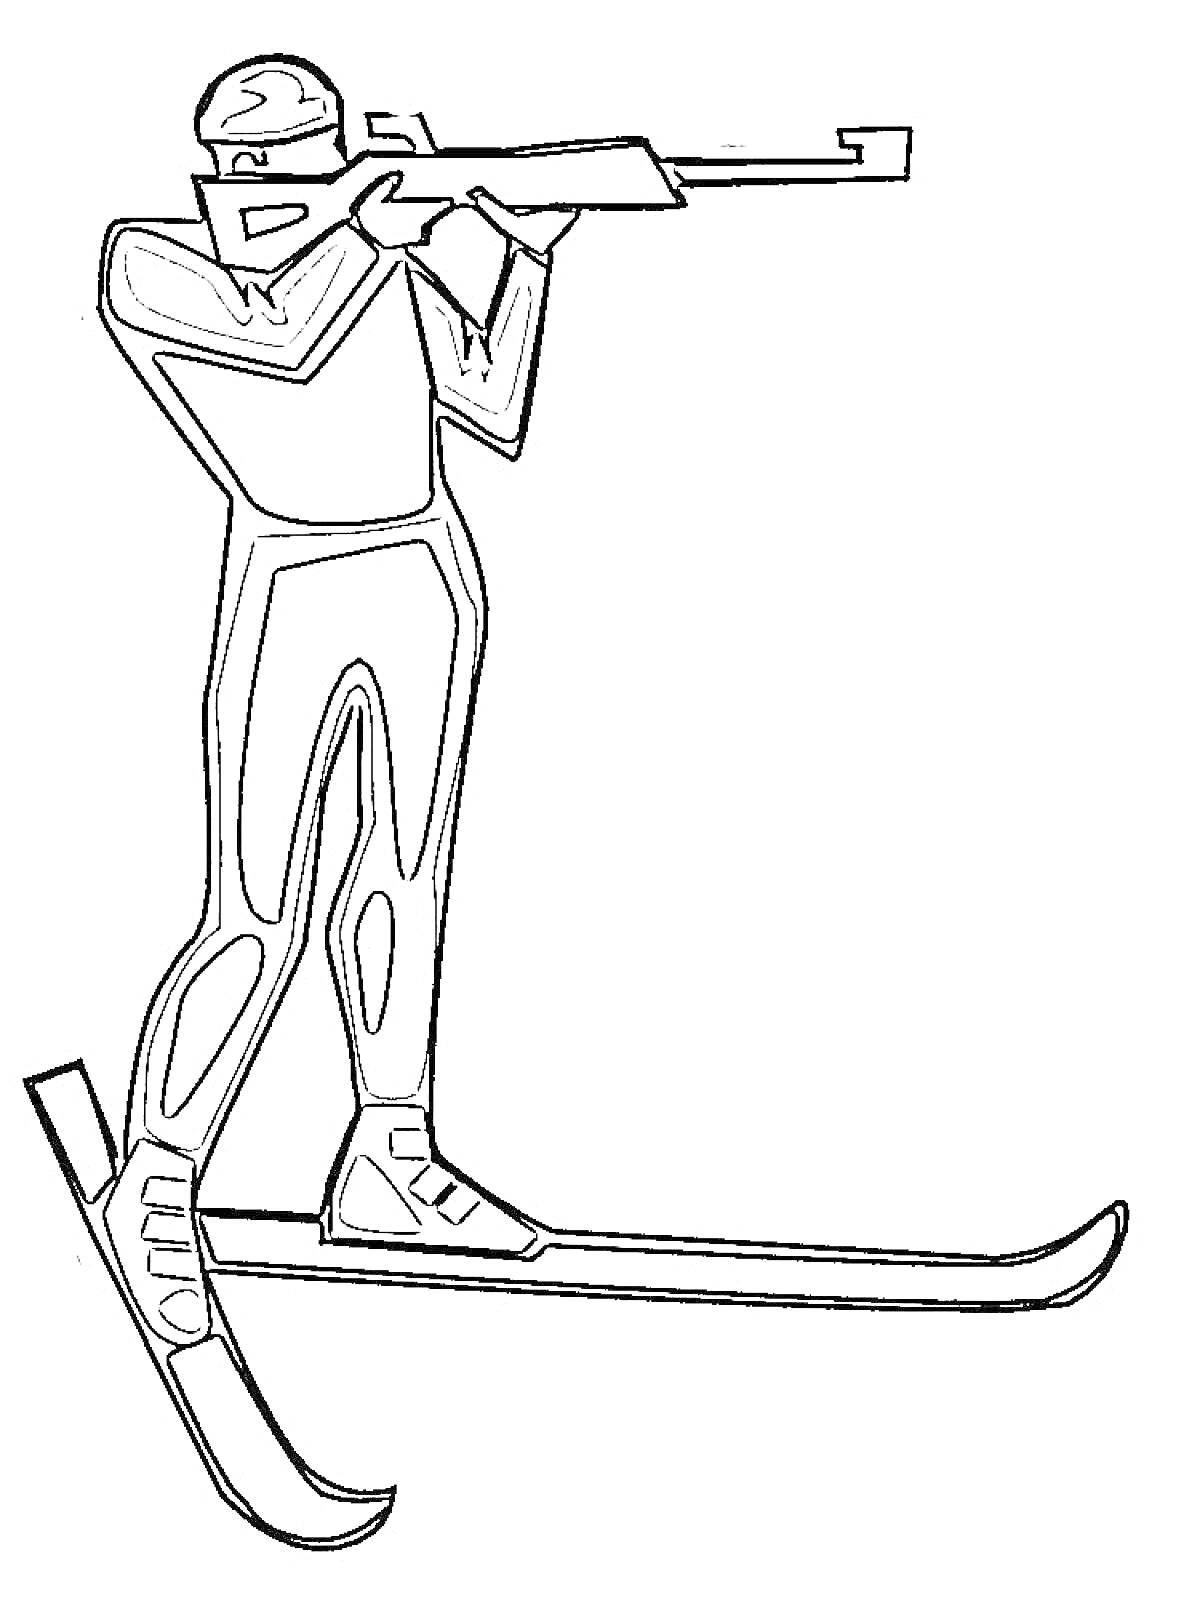 Раскраска Человек в спортивном костюме на лыжах, стреляющий из винтовки